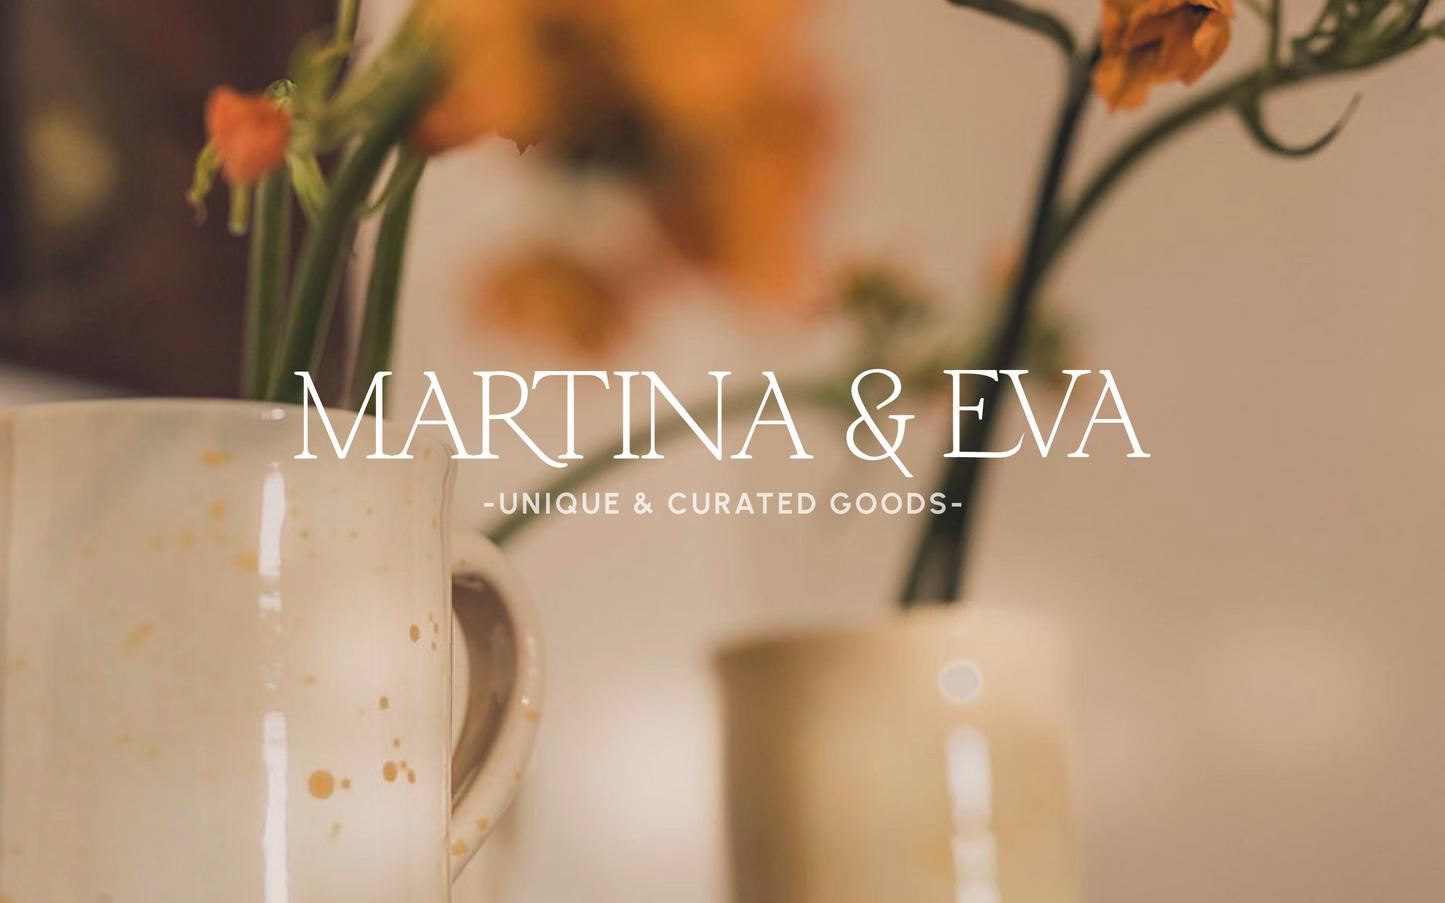 Tarjeta regalo MARTINA & EVA